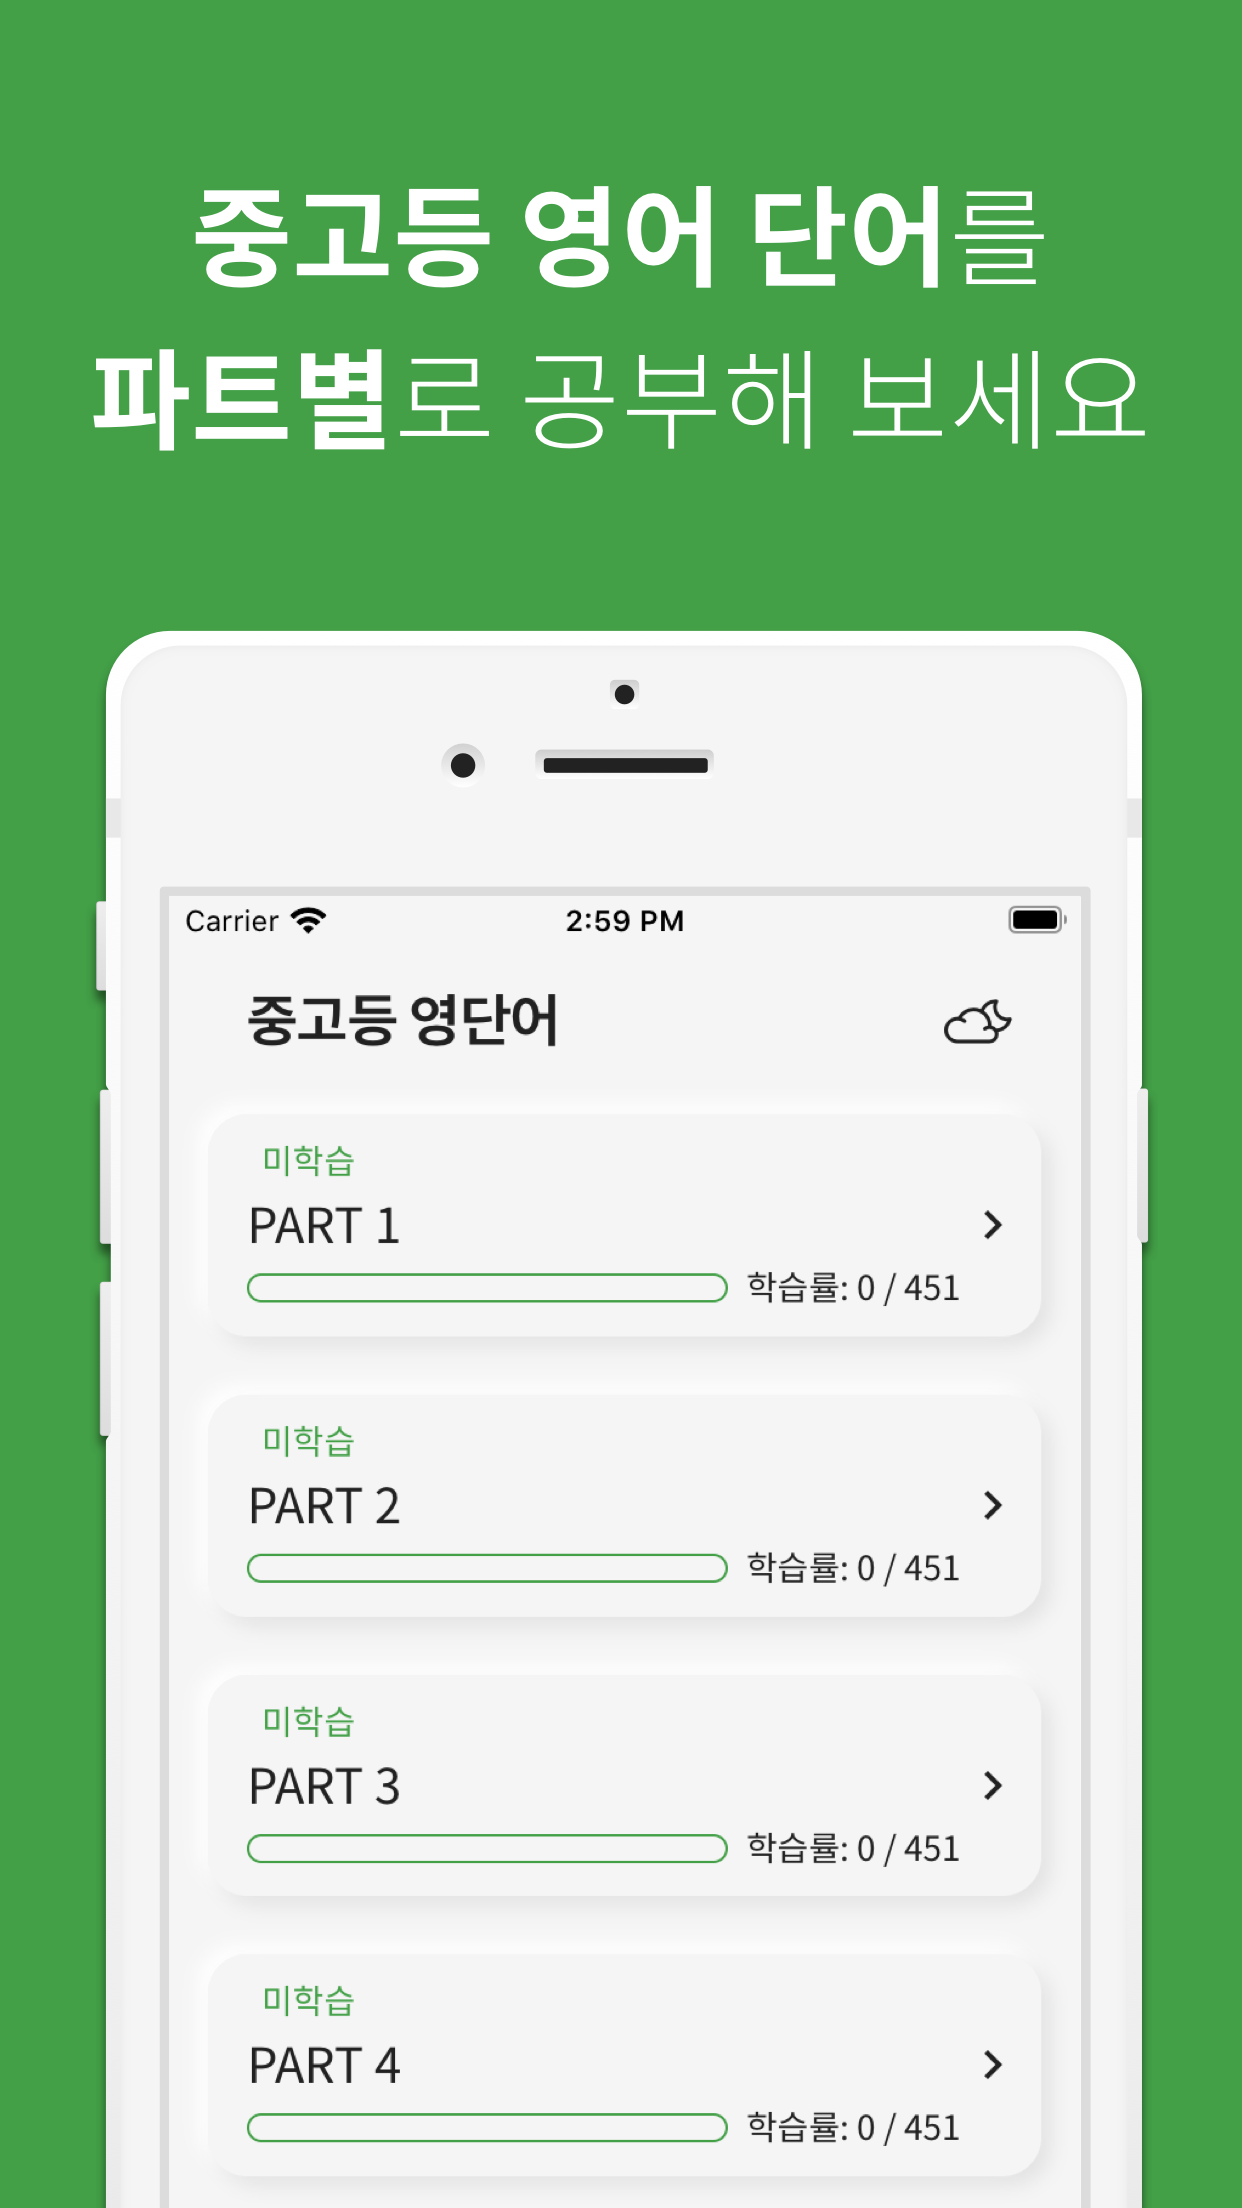 중고등 영어 단어 앱 - 앱 스크린 샷1